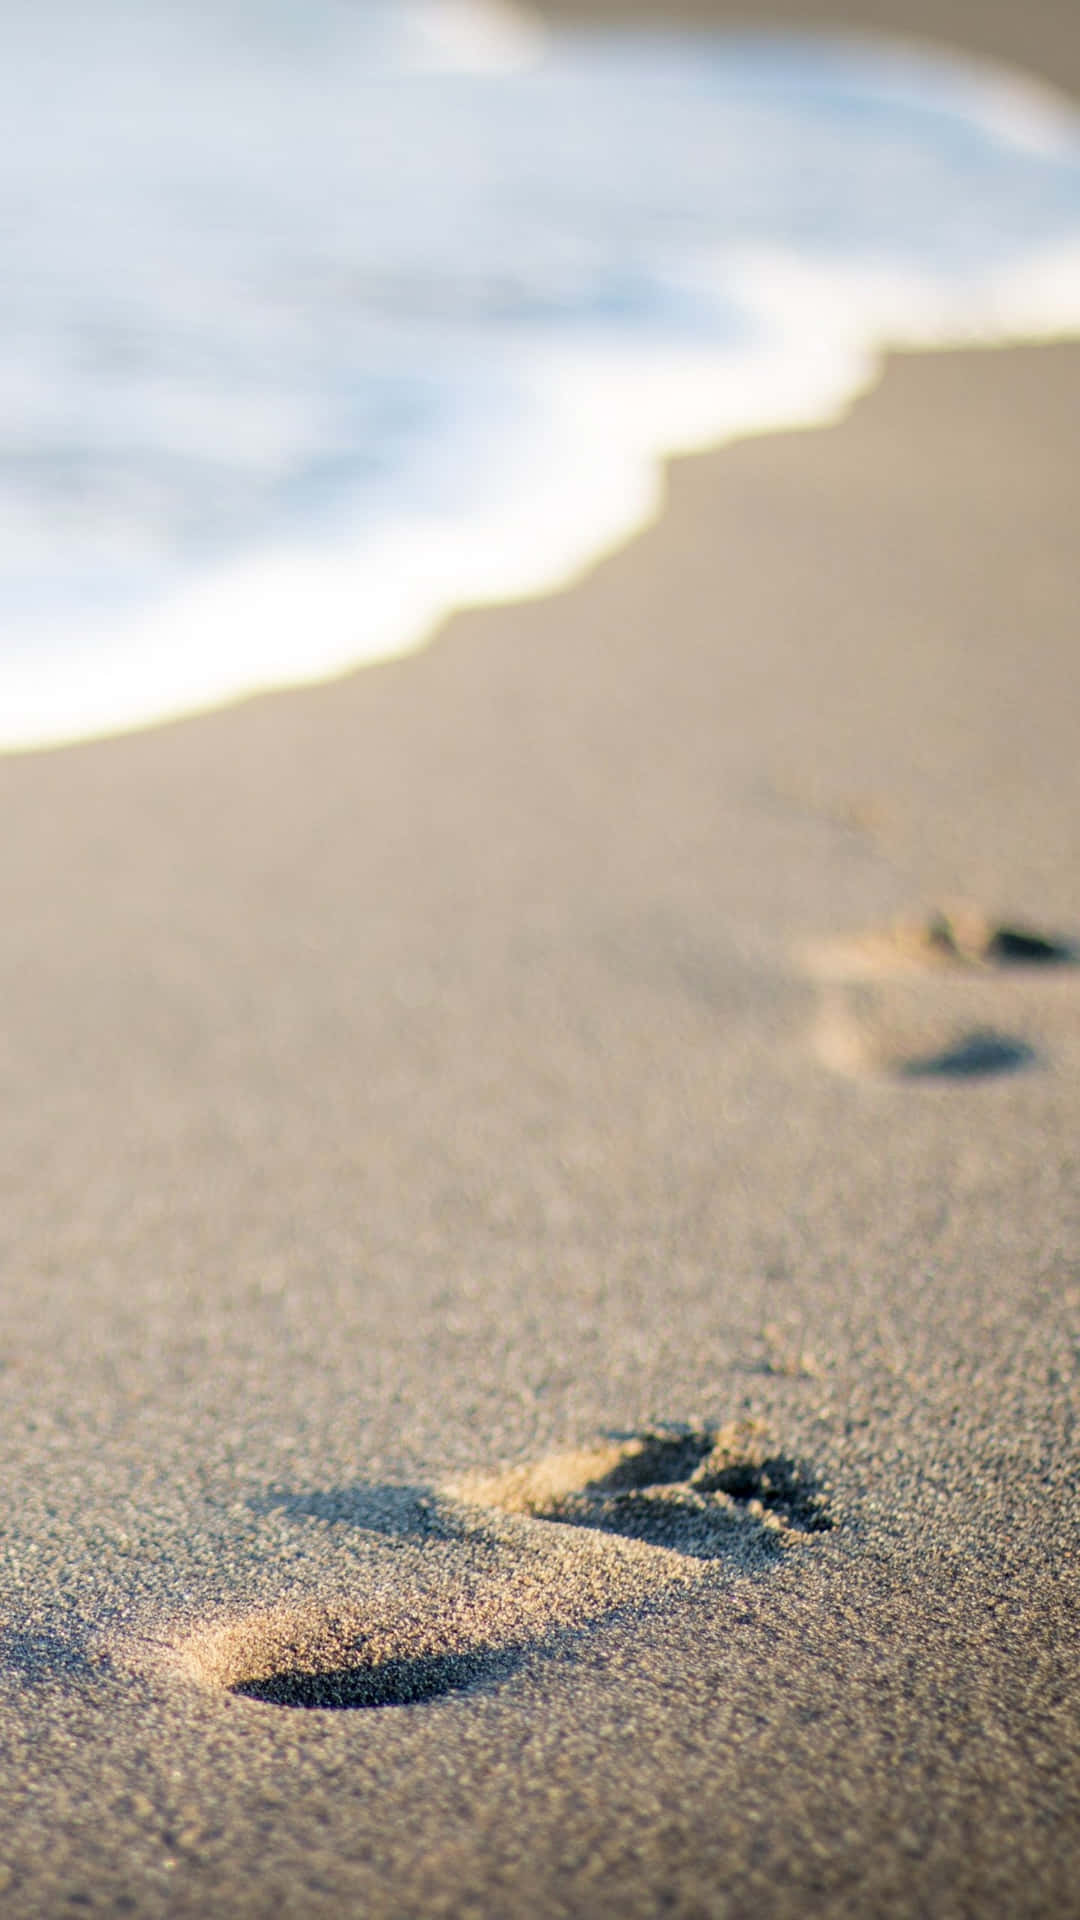 Beach Footprint On Sand Wallpaper